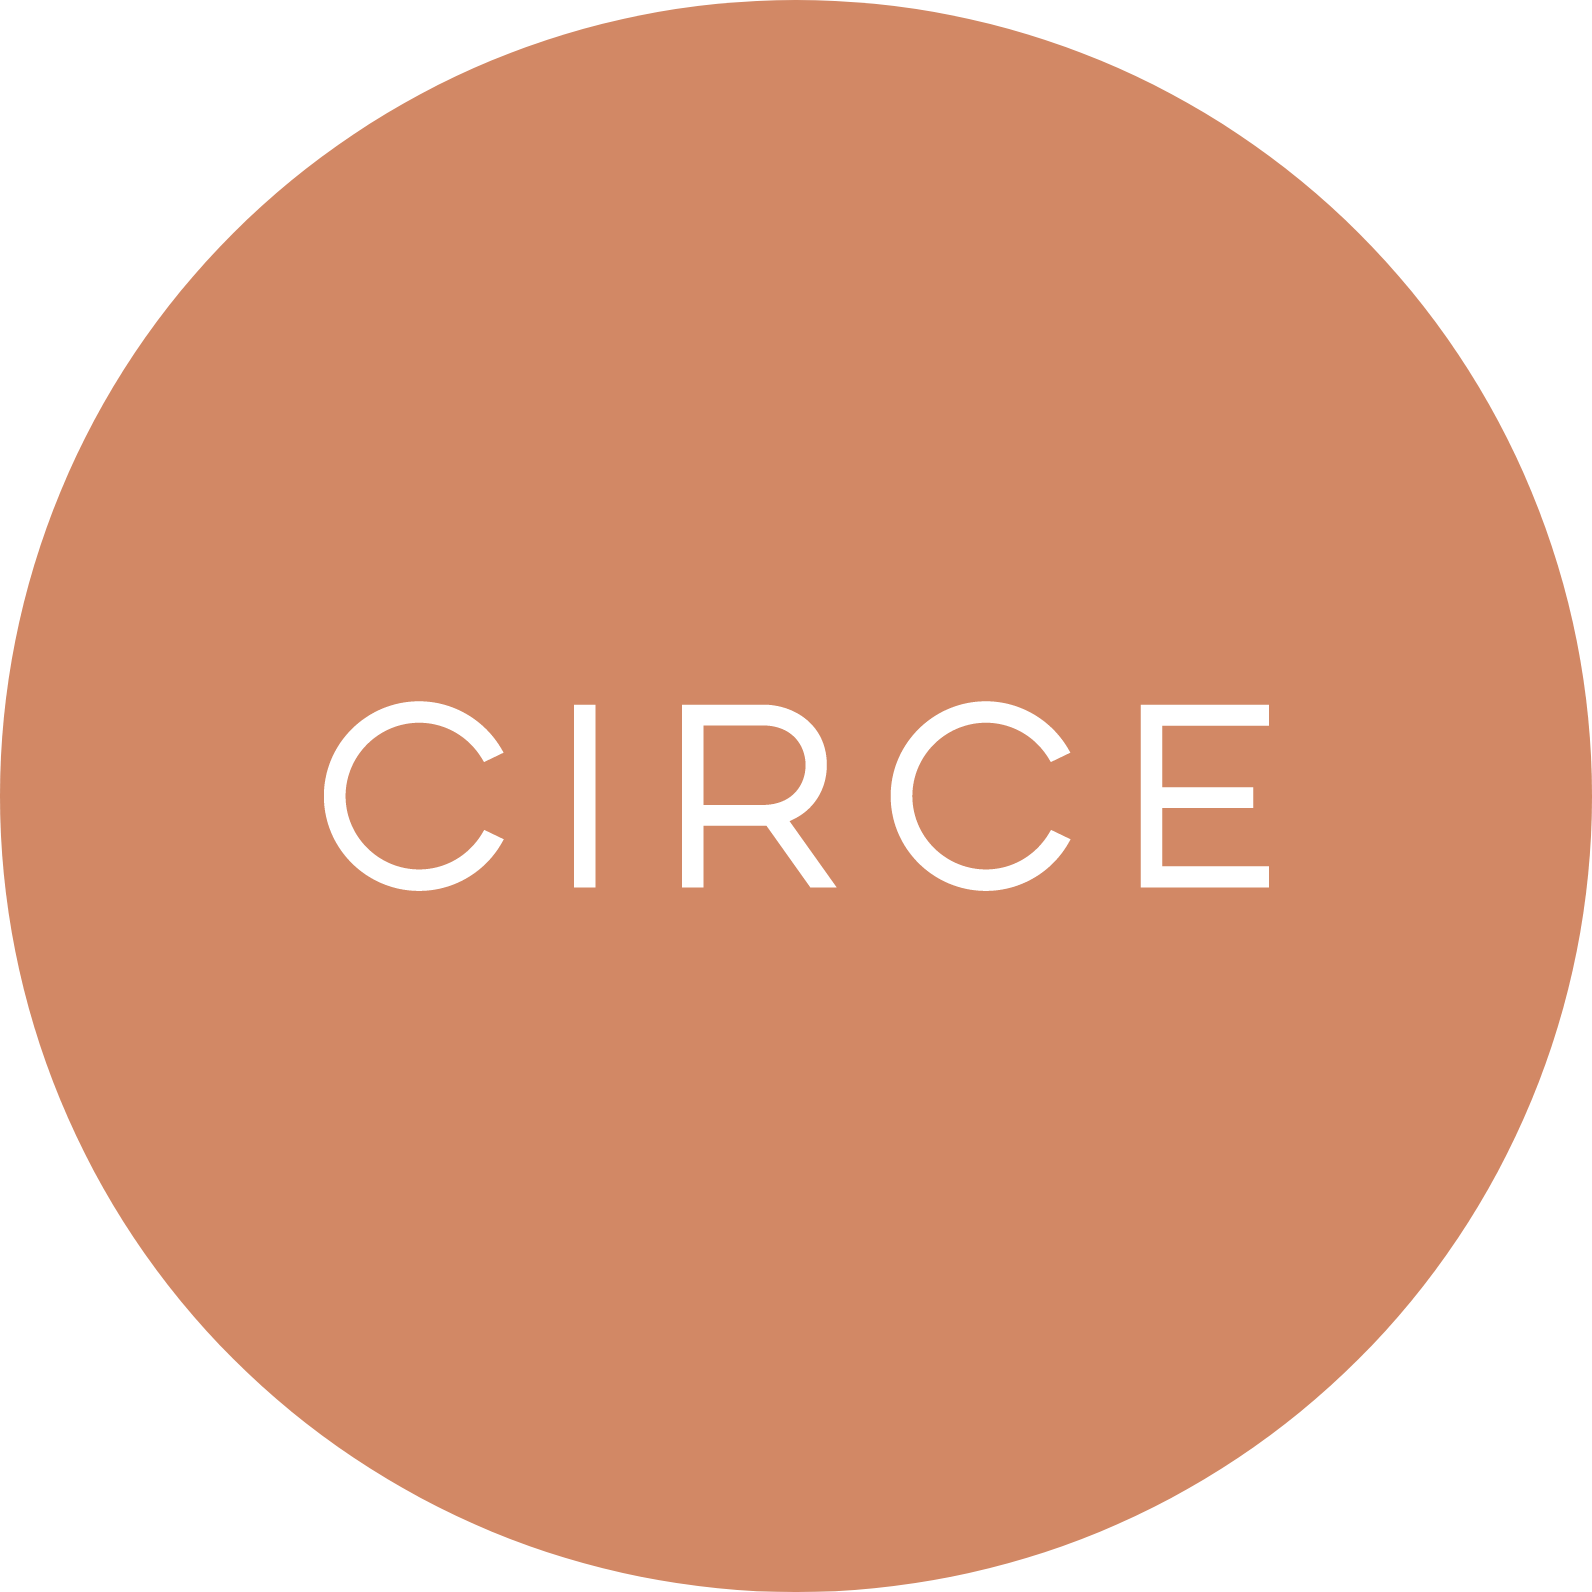 Circe logo, white font in orange/pink circle